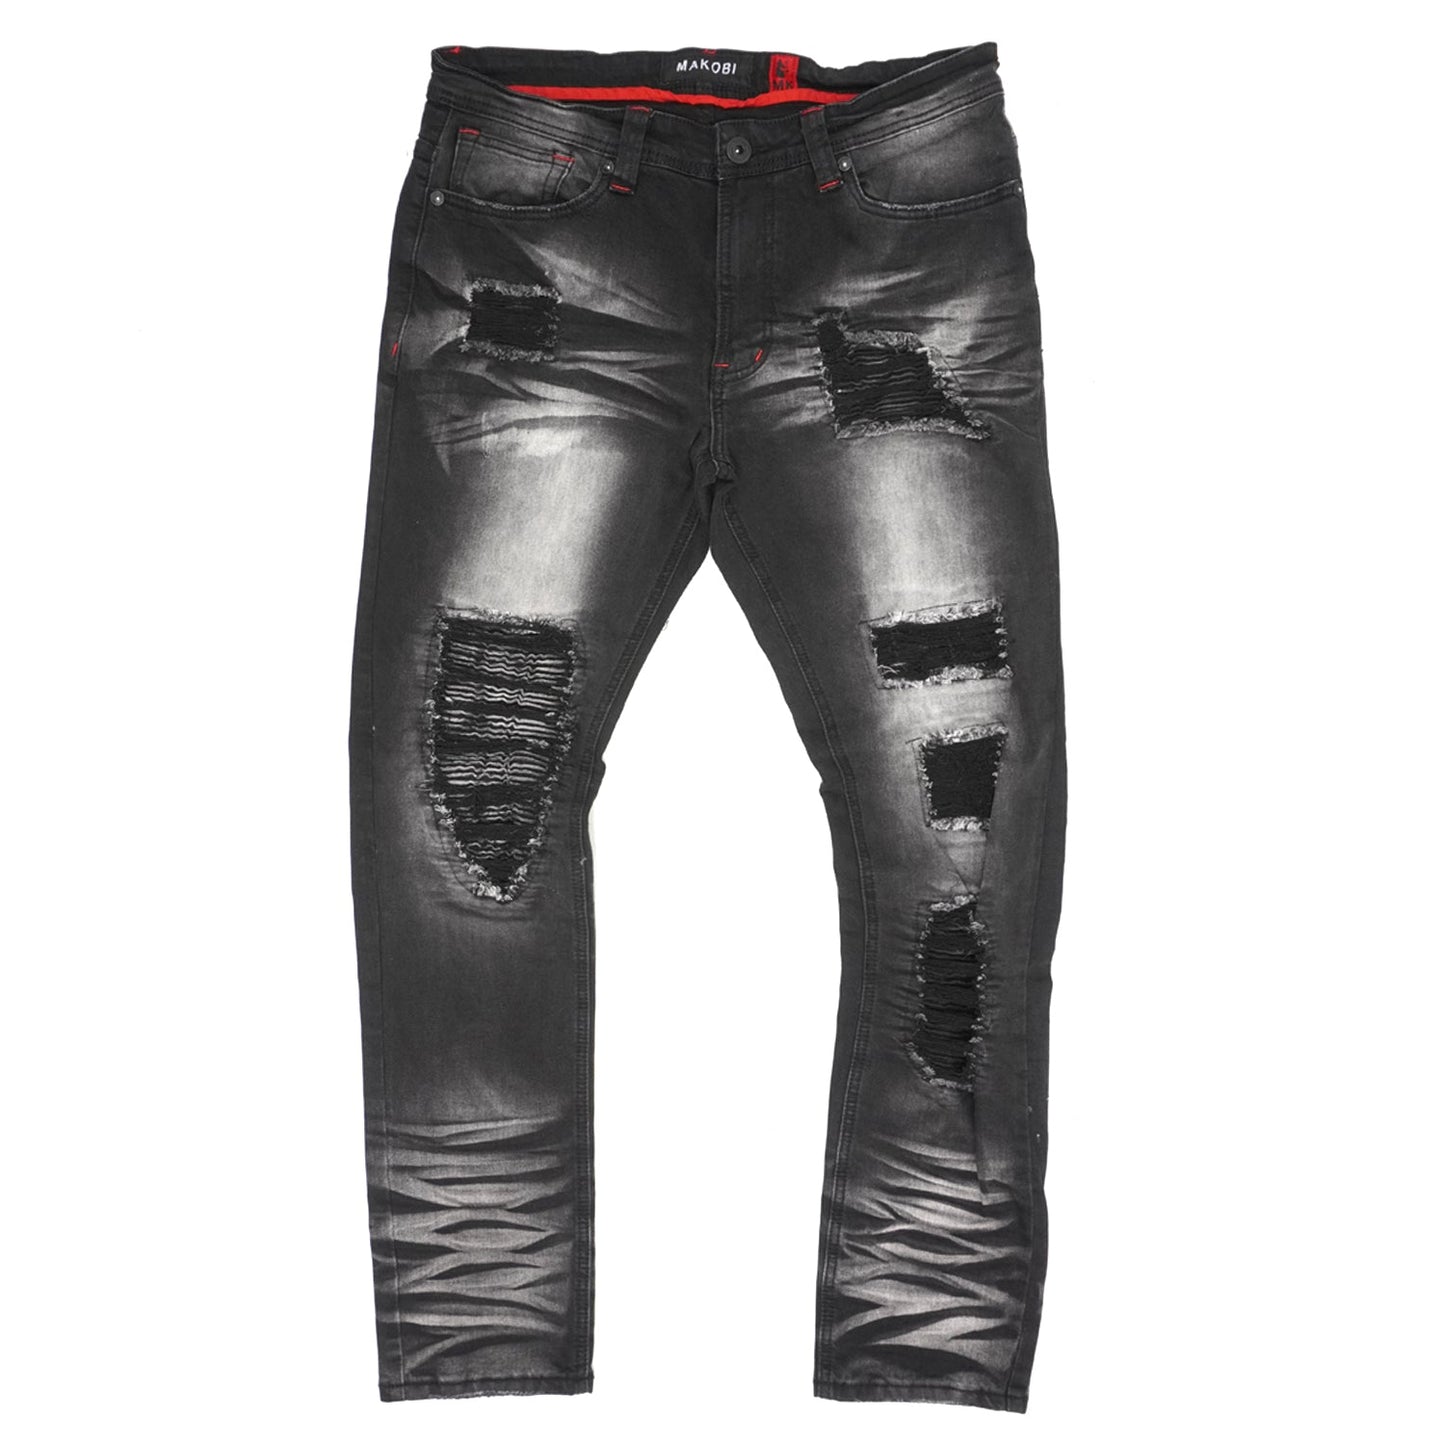 M1780 Makobi Pensacola Shredded Jeans - Black Wash